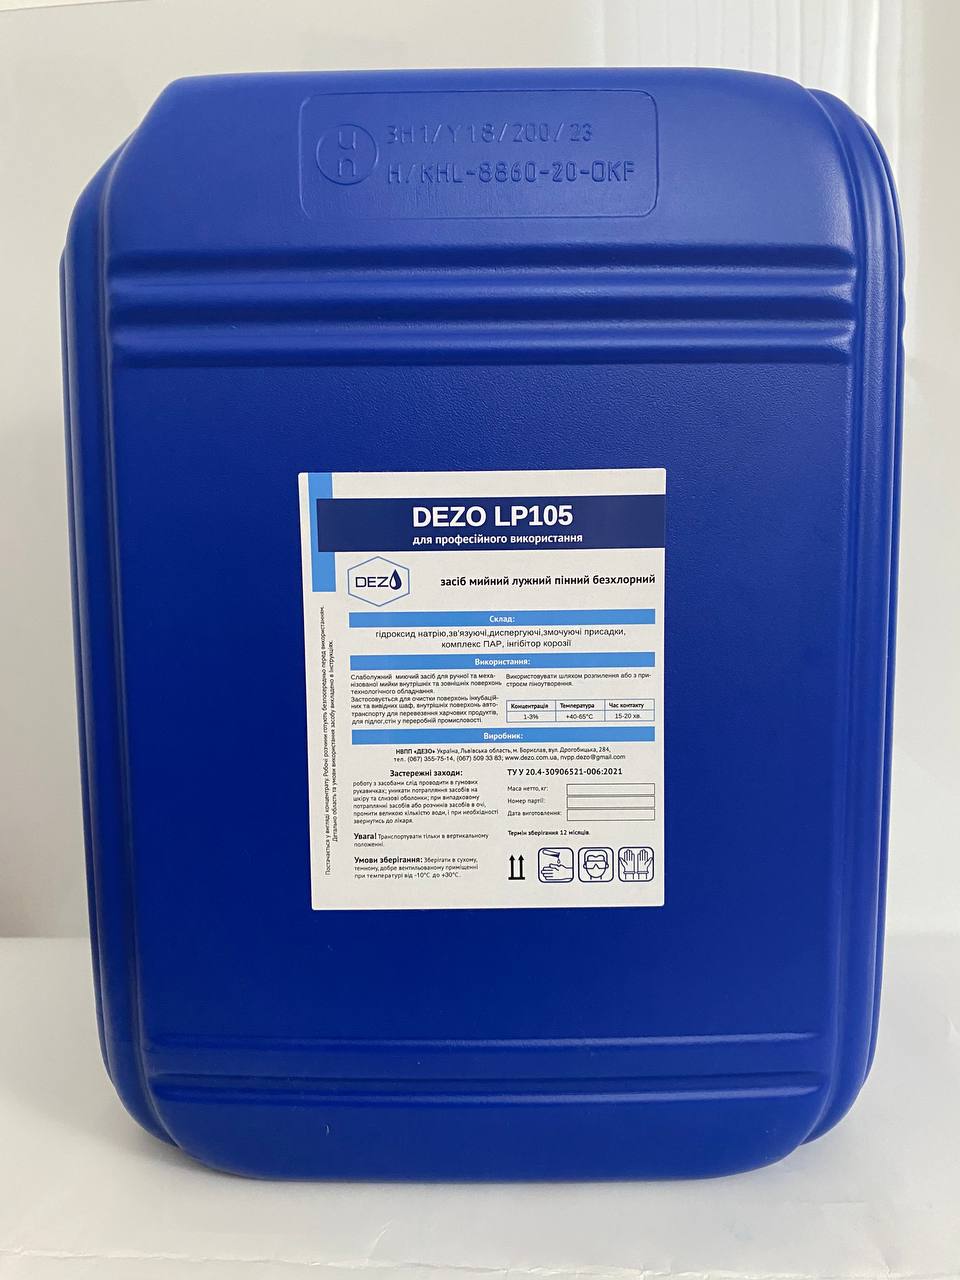 Засіб мийний лужний пінний безхлорний DEZO LP105, 10 кг